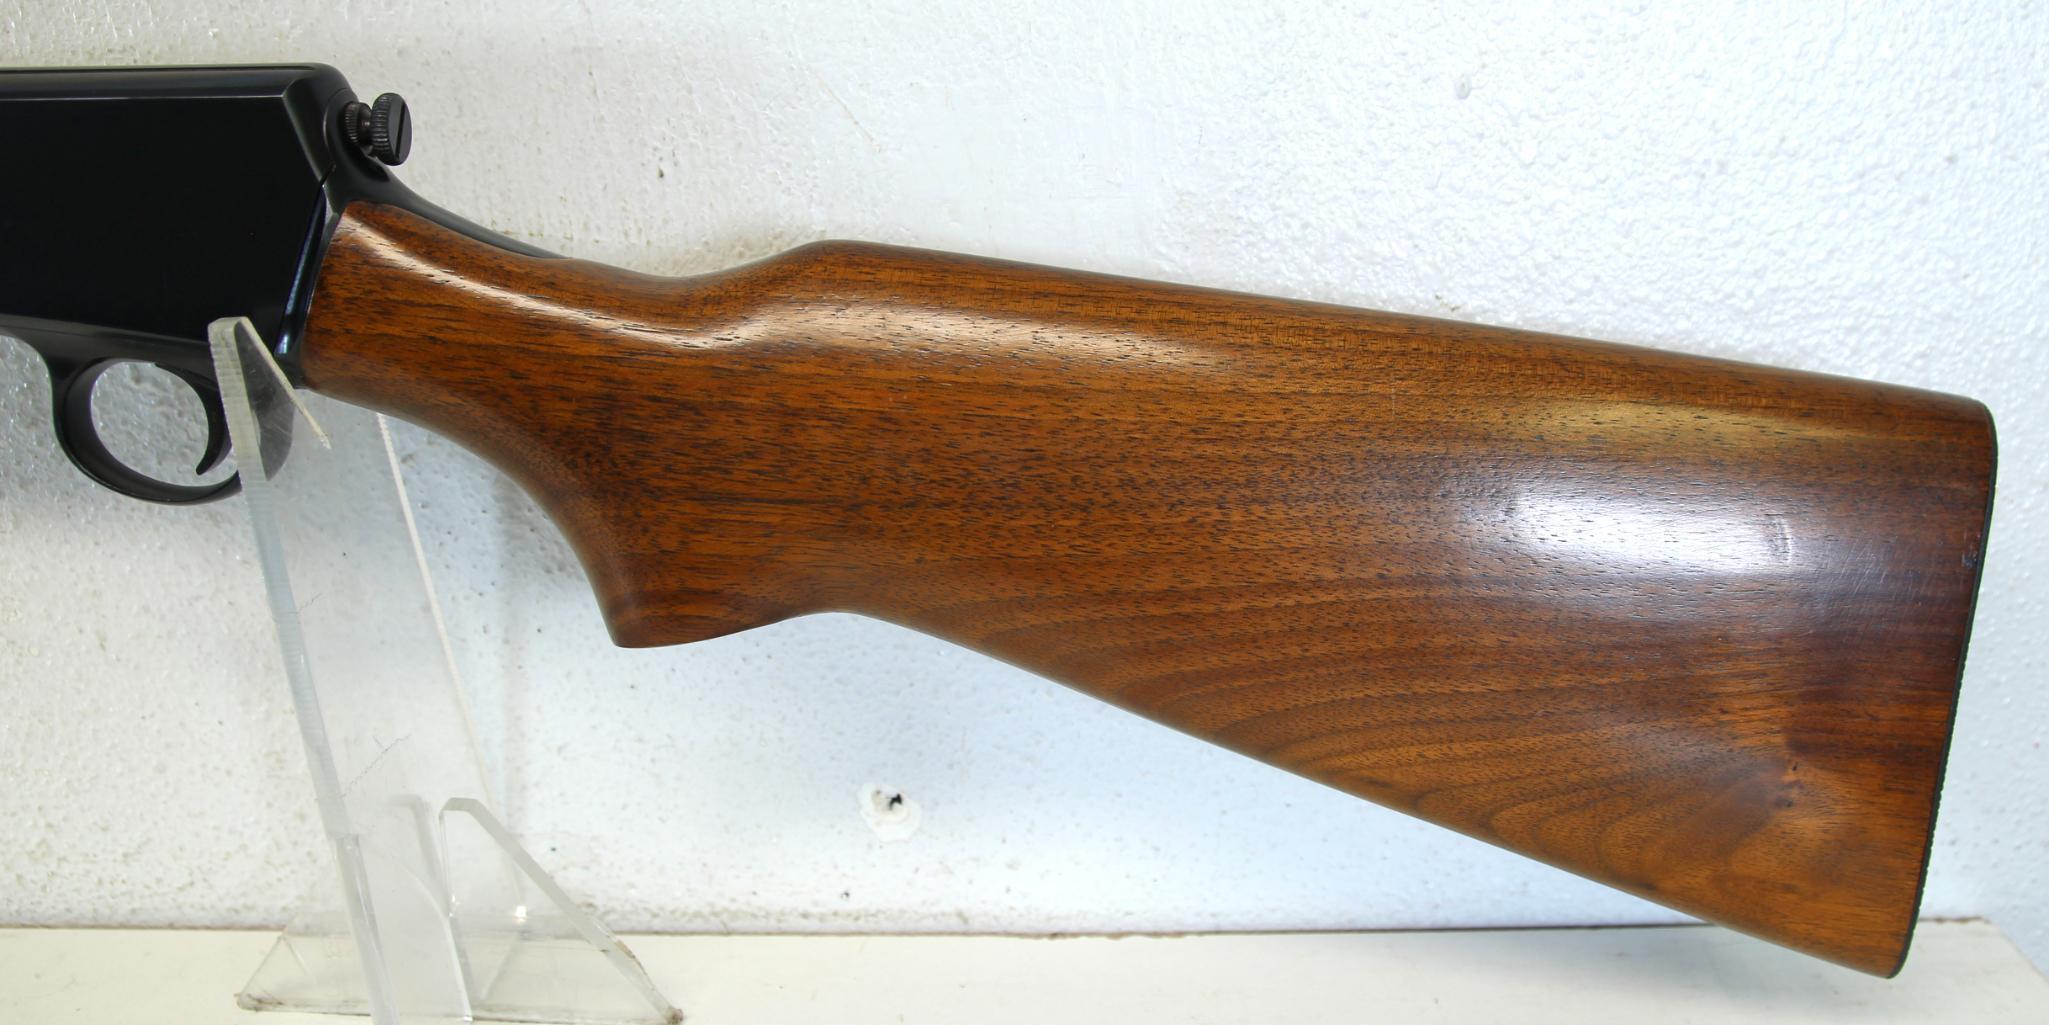 Winchester Model 63 .22 LR Semi-Auto Rifle Excellent Original Condition... SN#164281A...